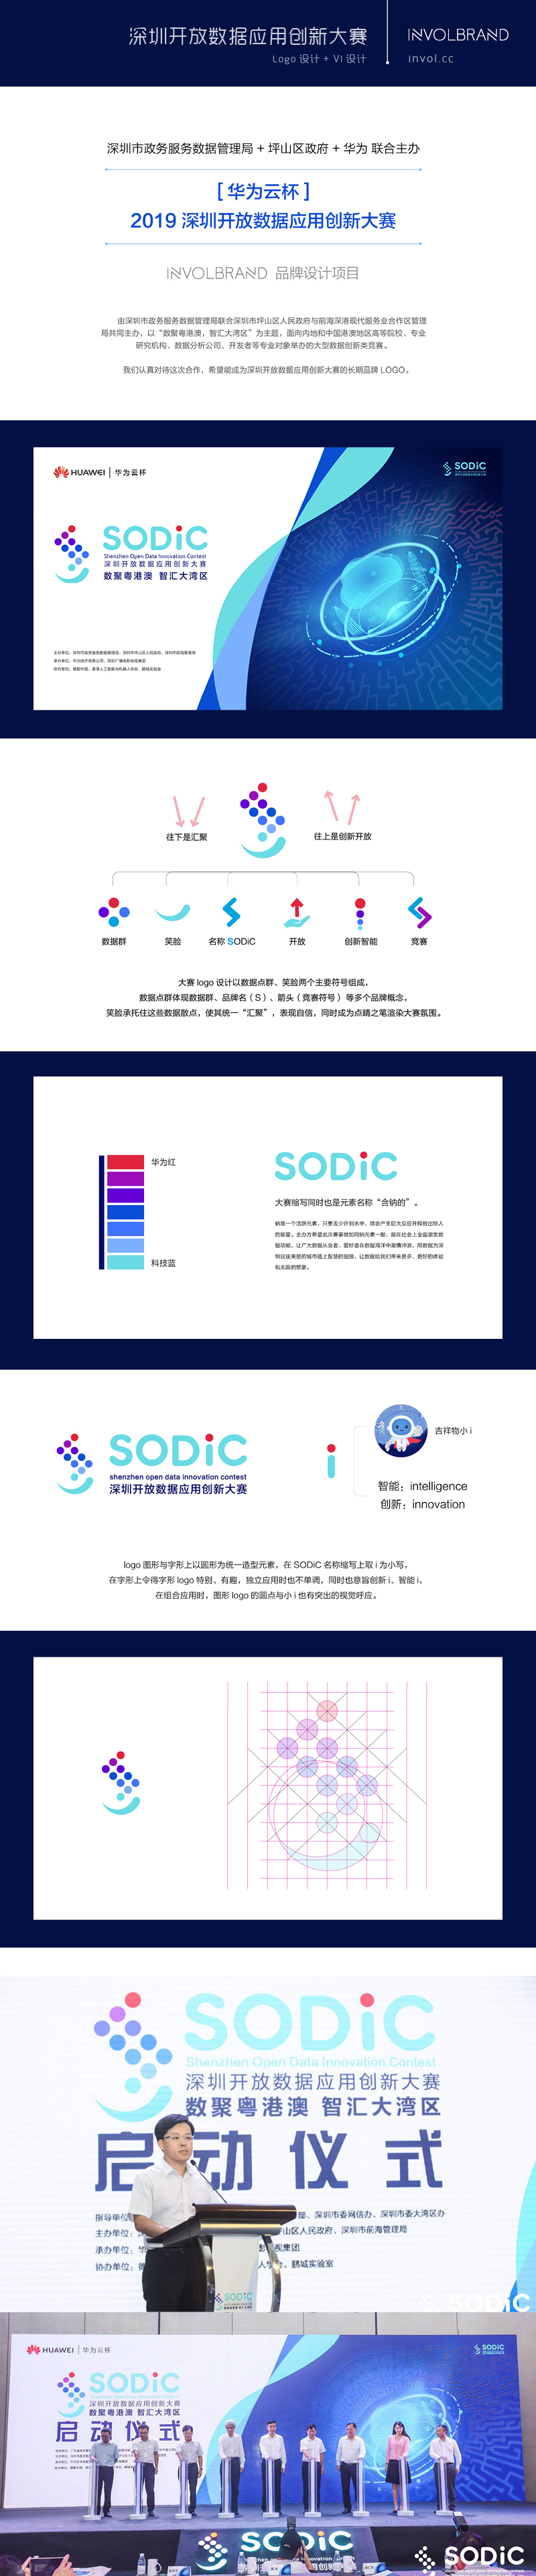 SODiC 深圳开放数据大赛 | 品牌设计图0